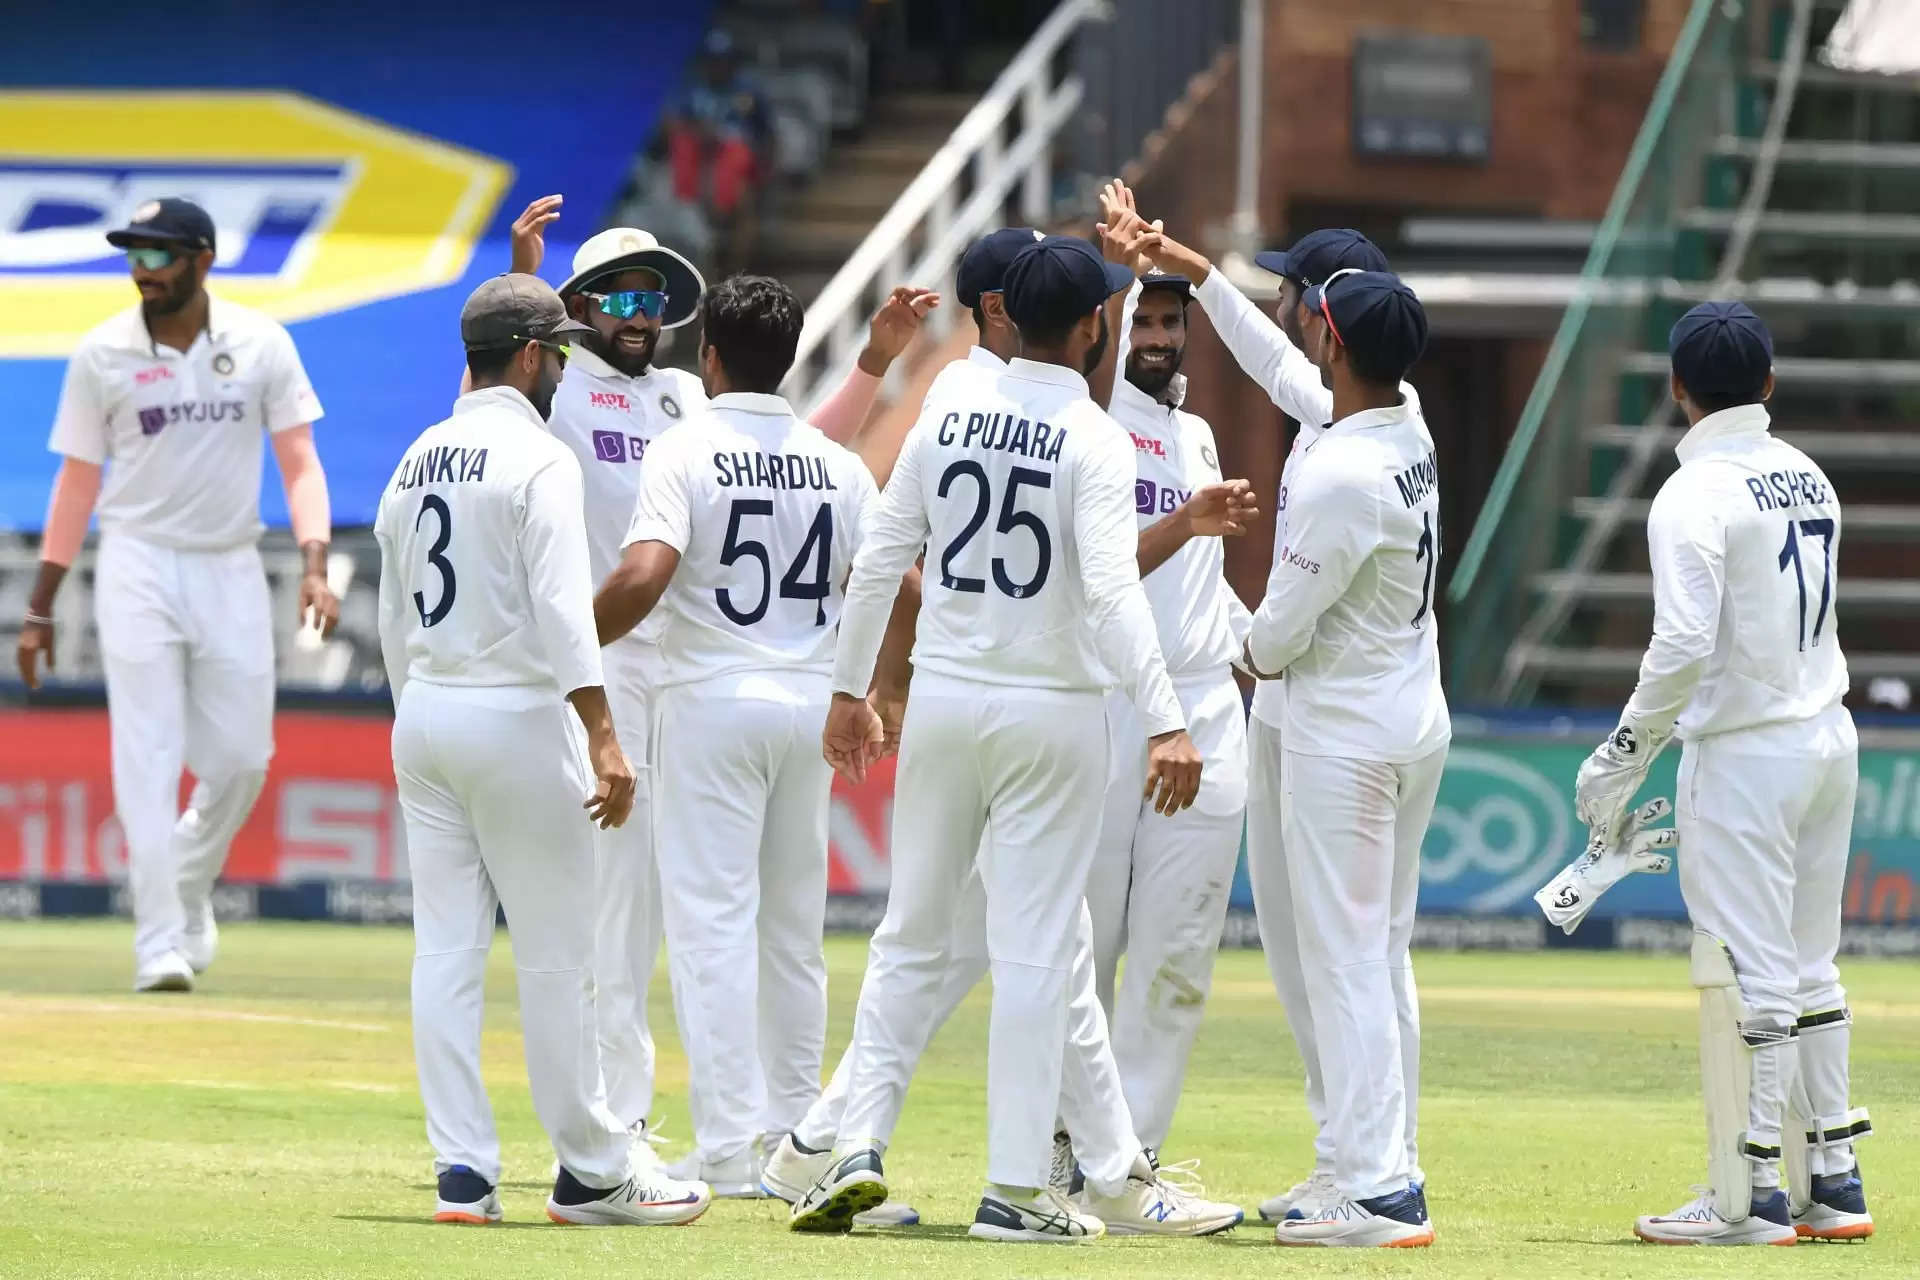 भारतीय टीम को लगा बड़ा झटका, प्रमुख खिलाड़ी दक्षिण अफ्रीका के खिलाफ तीसरे टेस्ट से बाहर